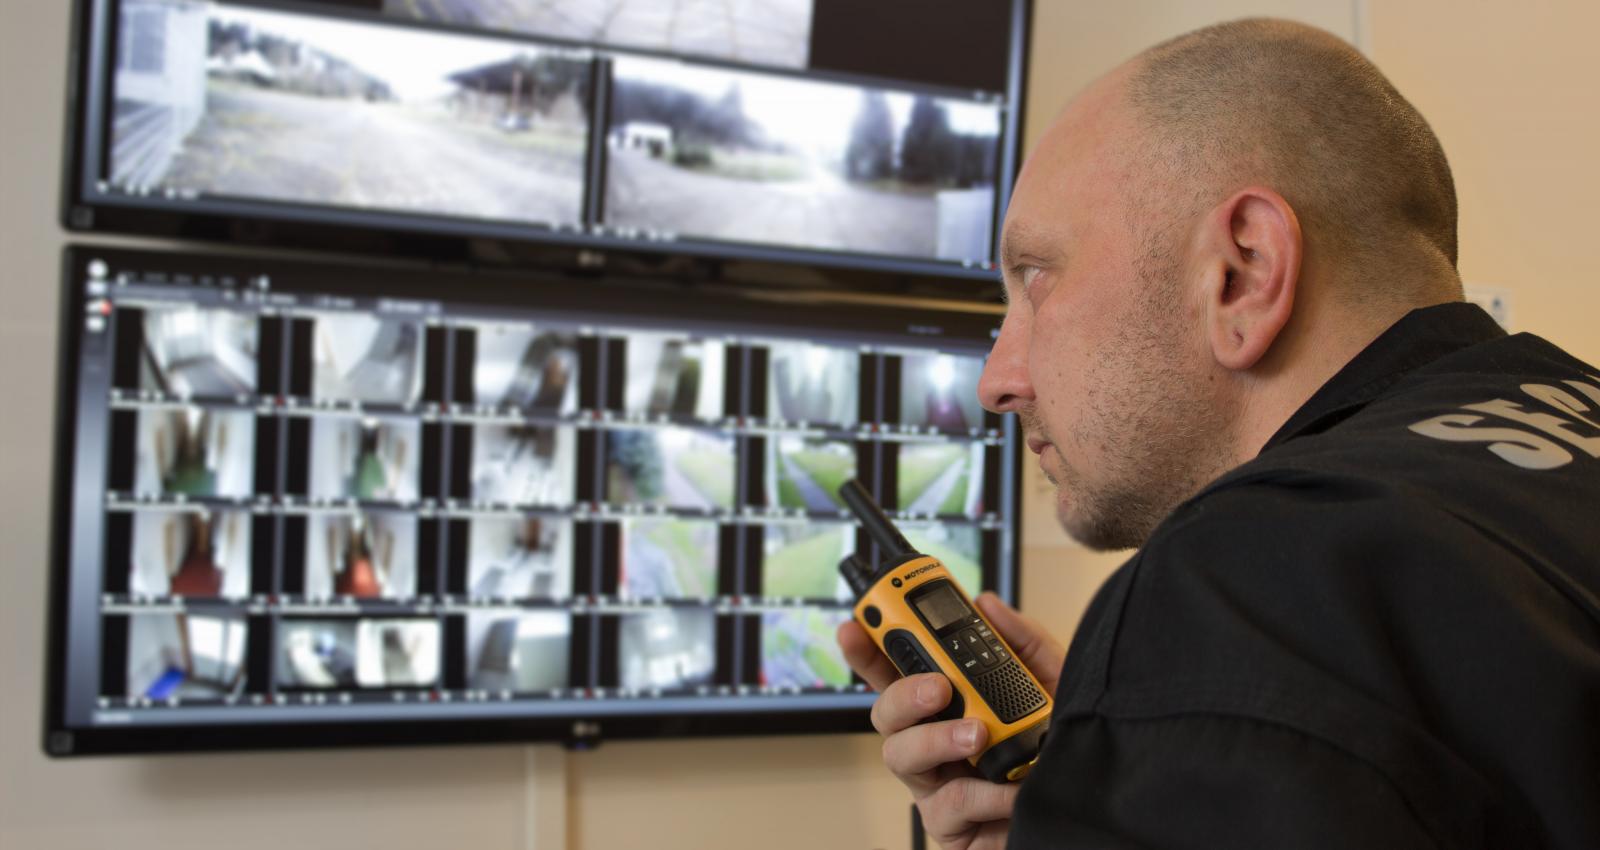 Ein Wachmann mit walkie talkie in der Hand überprüft an den Monitoren die Übertragung der Überwachungskameras.